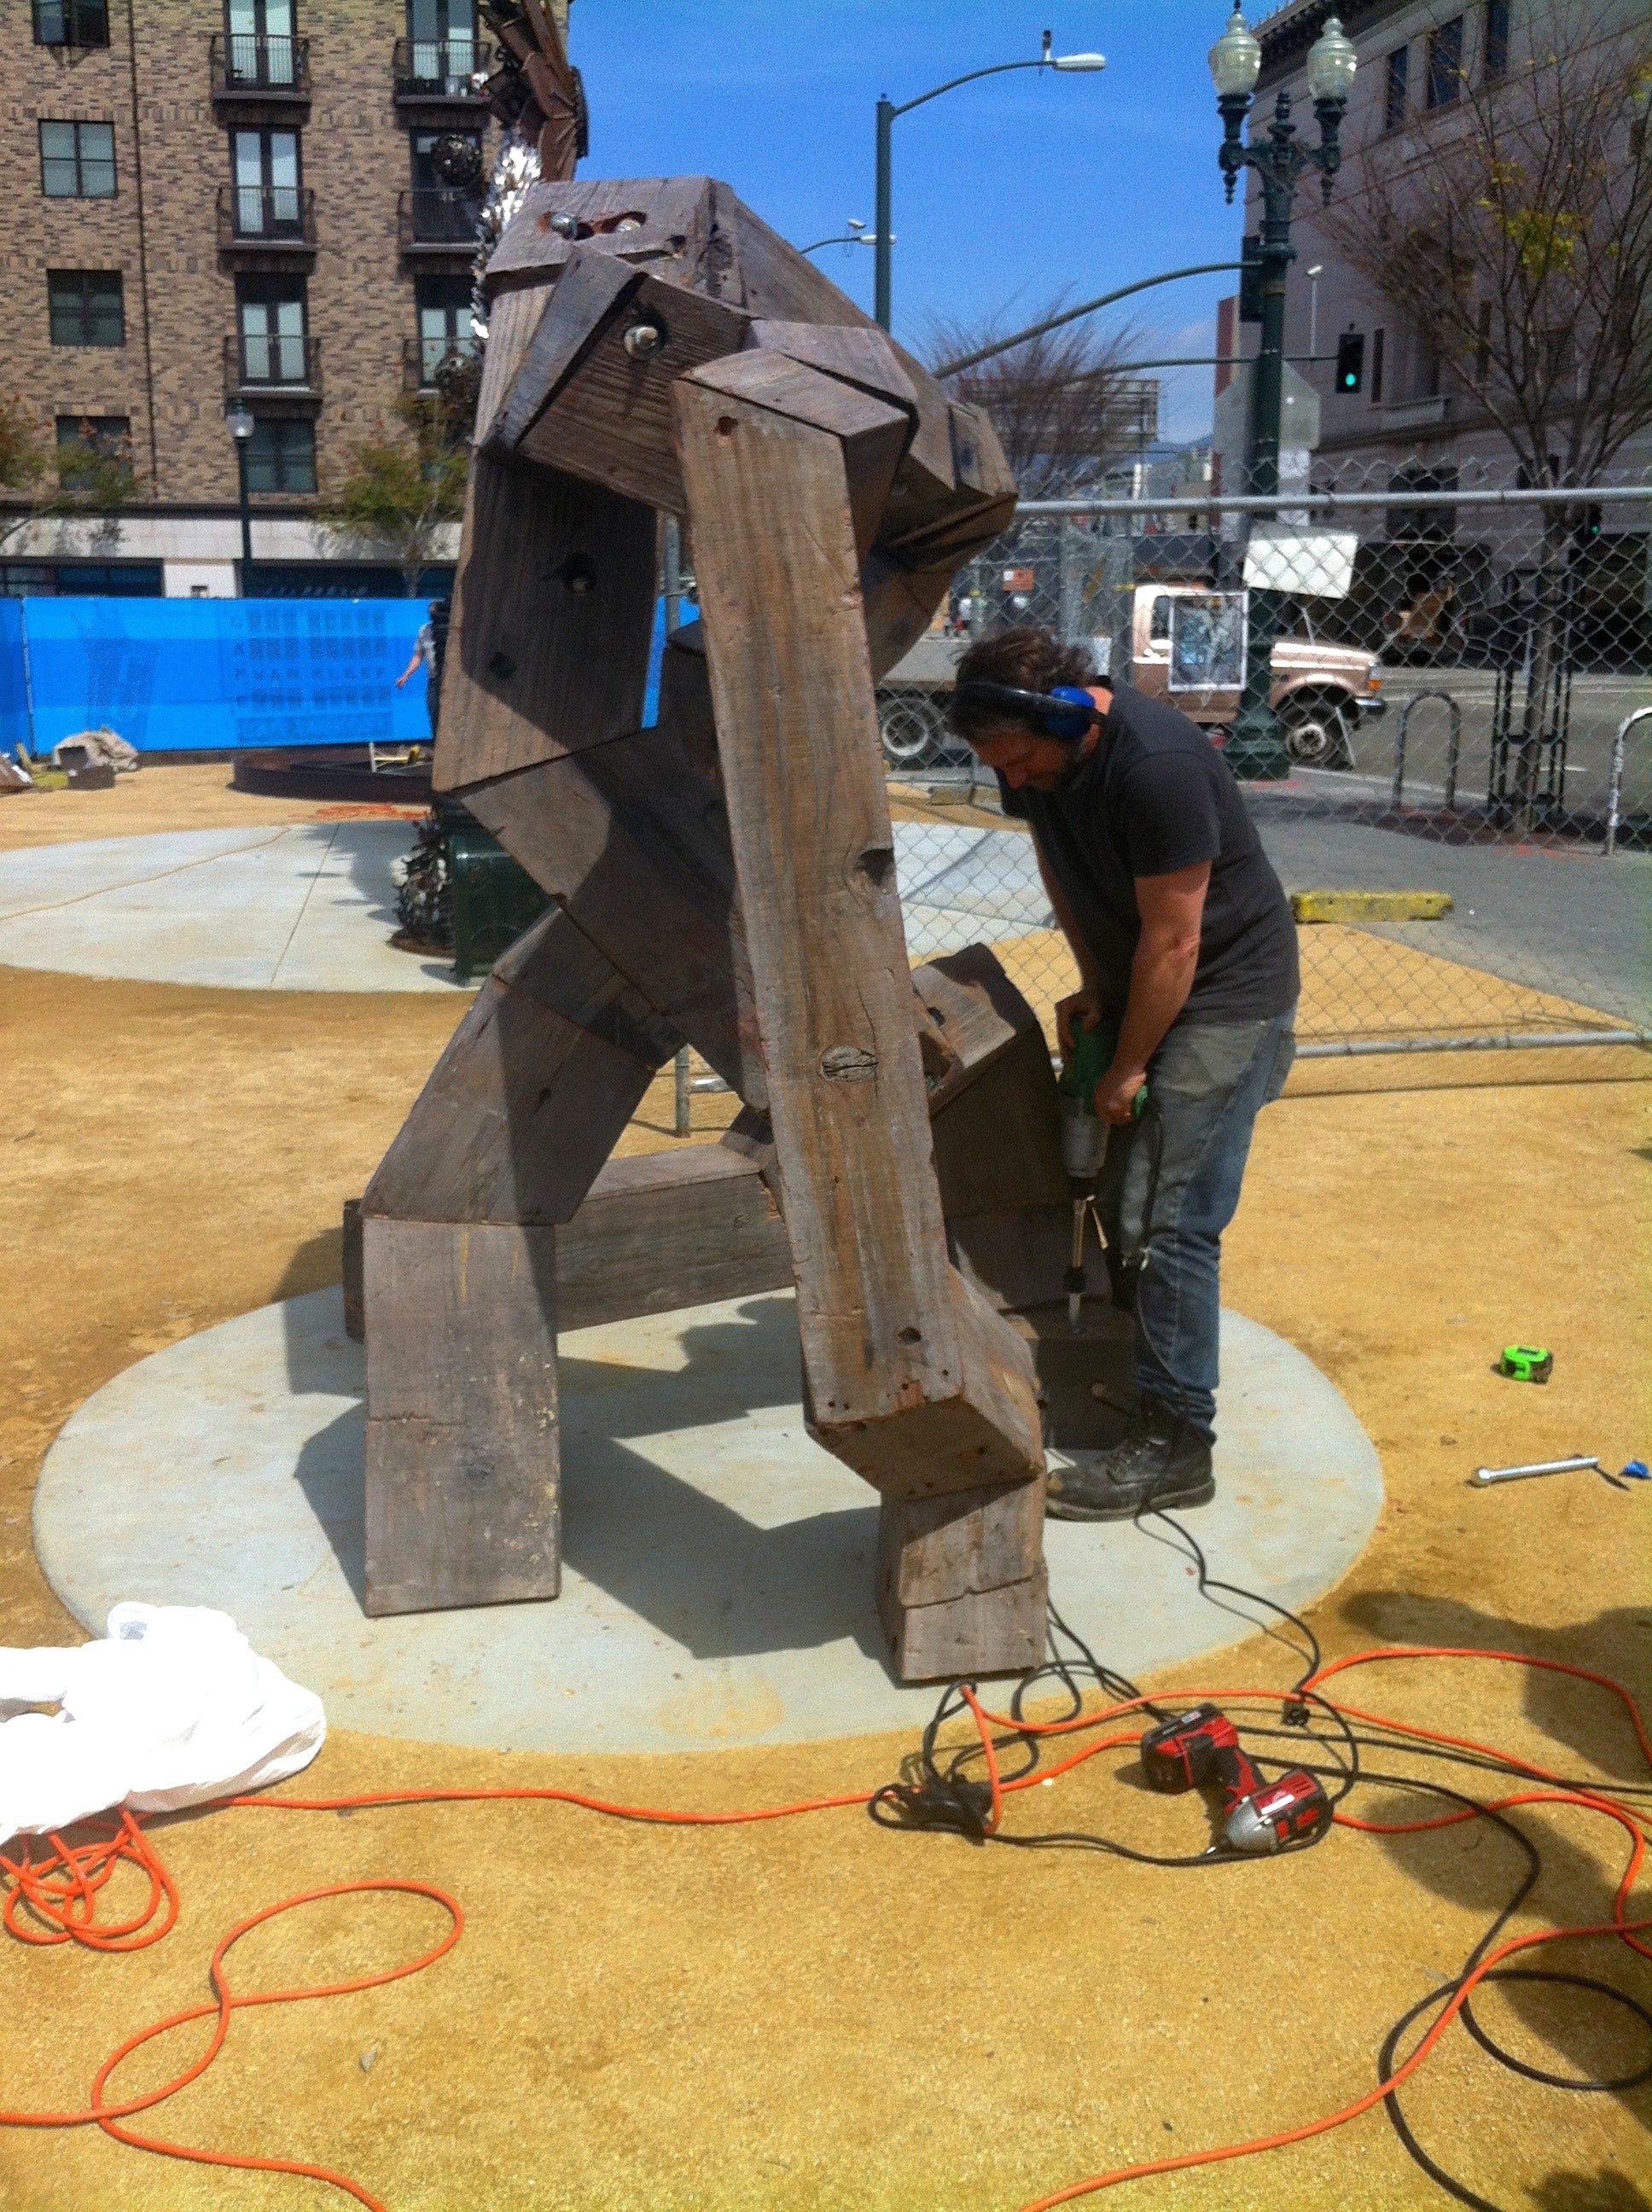 Oakland’s first outdoor sculpture park opens tonight!